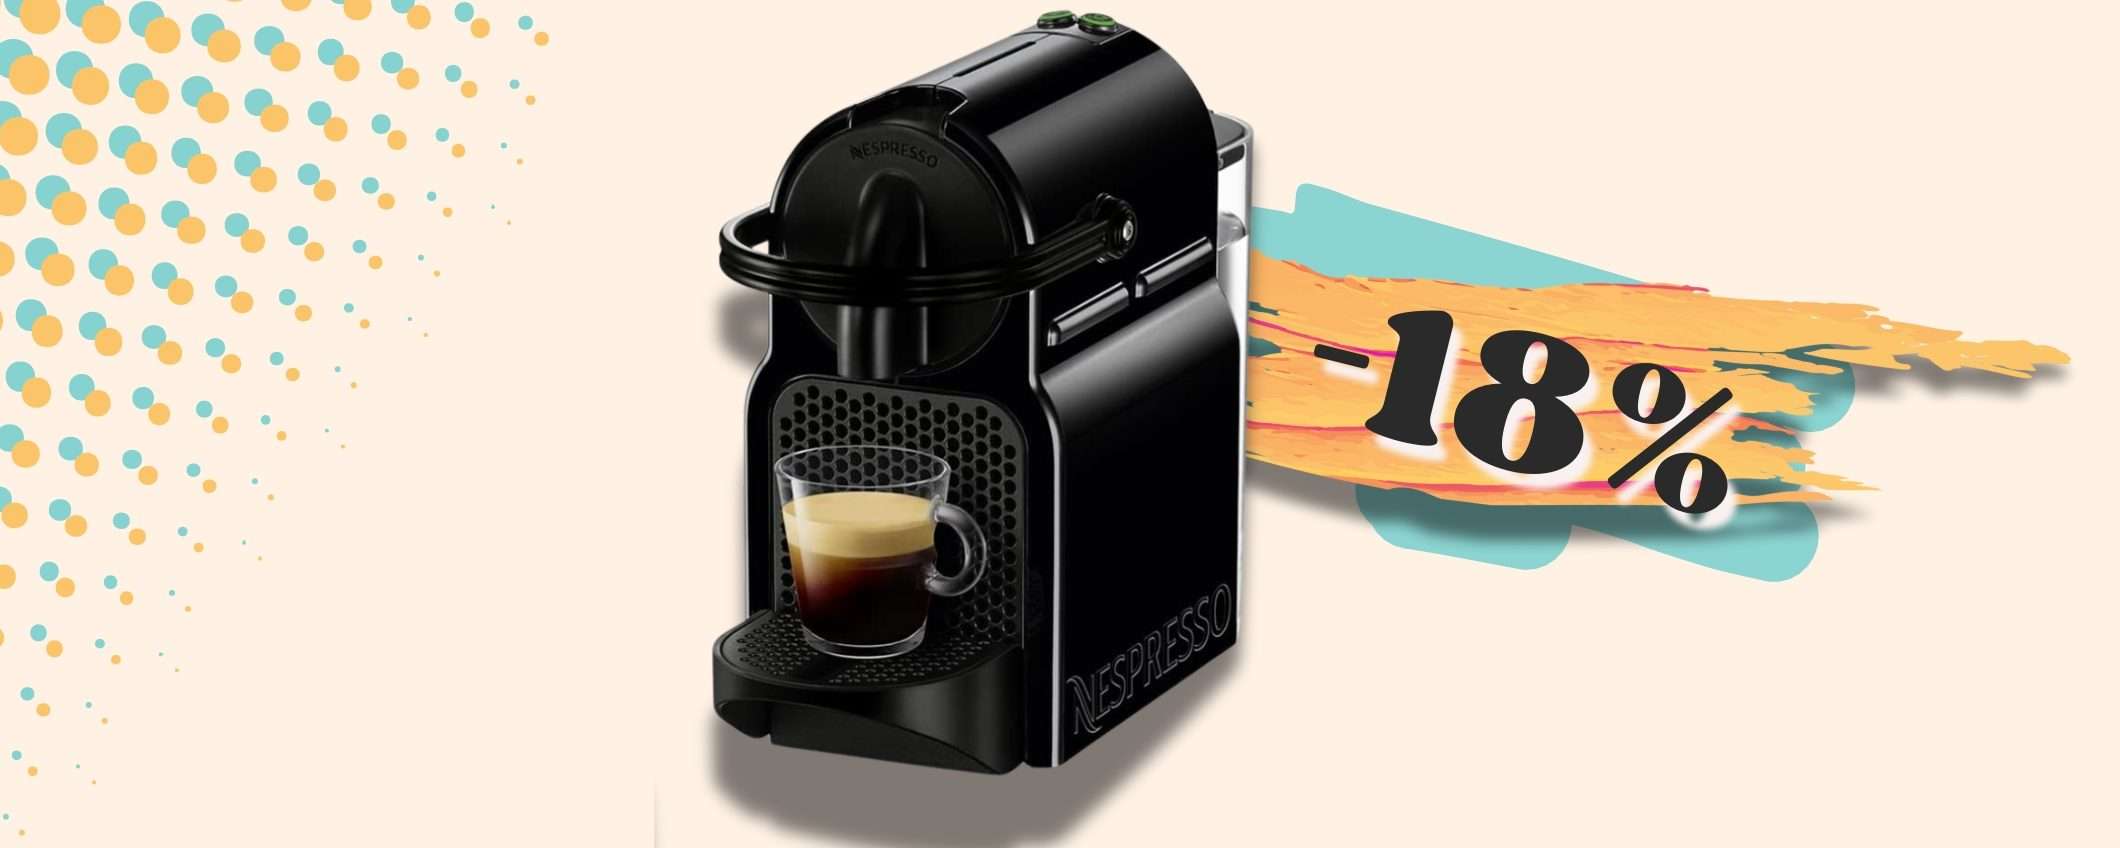 TORNA in promo Nespresso Inissia: la MIGLIORE macchina per caffè a casa